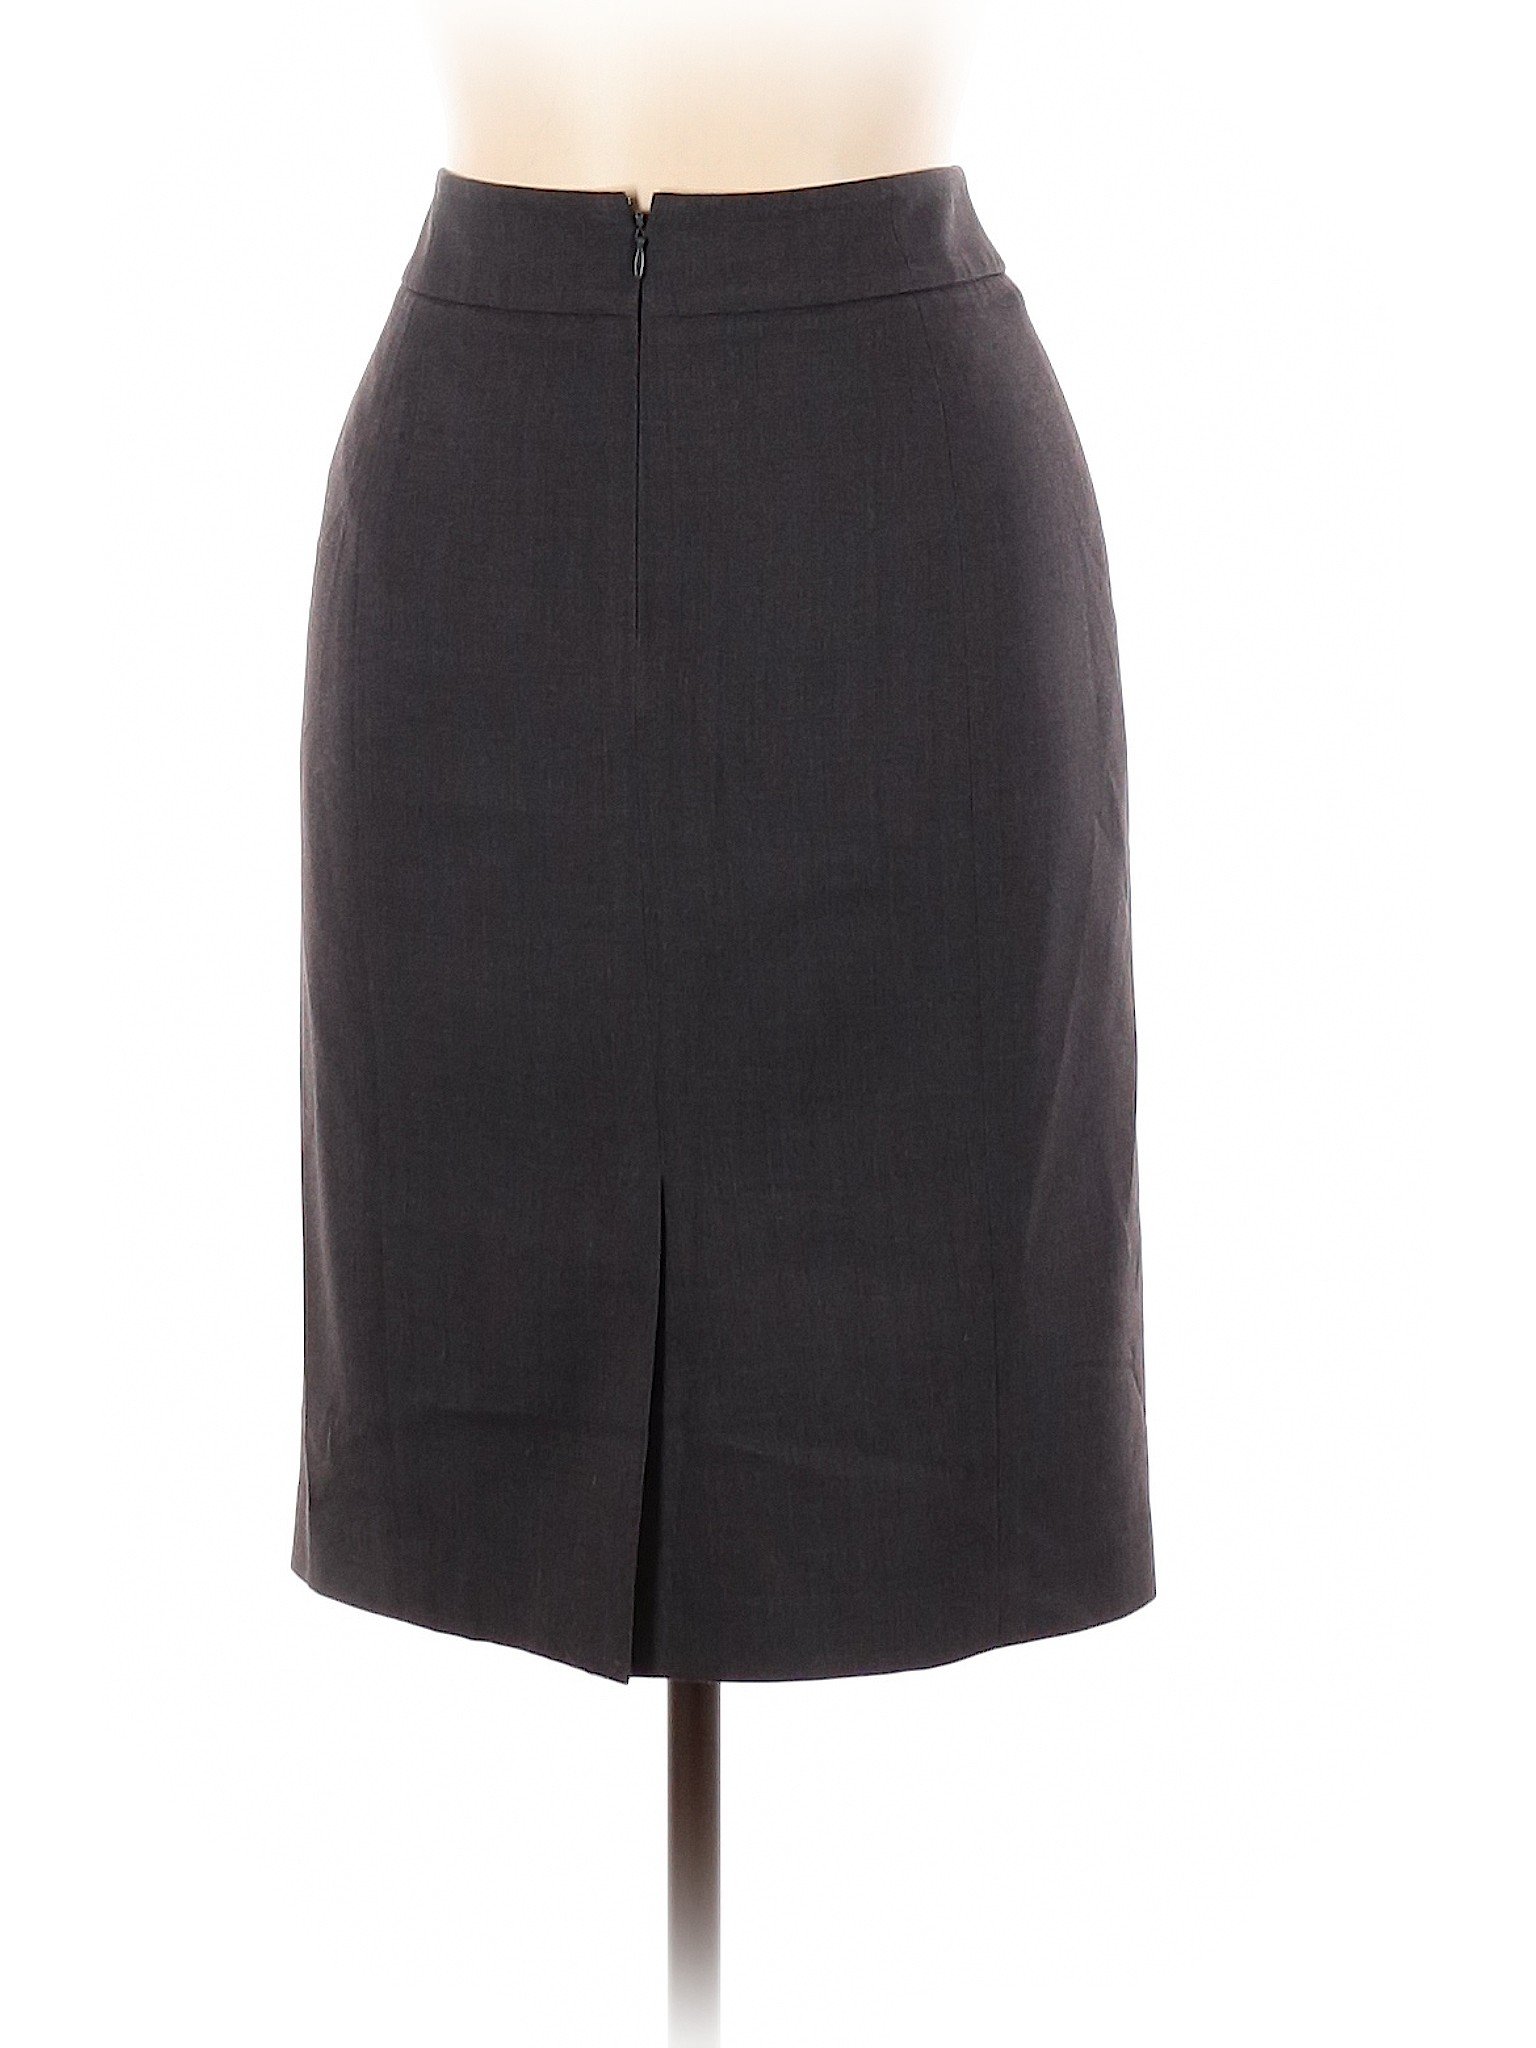 Calvin Klein Women Black Casual Skirt 10 | eBay